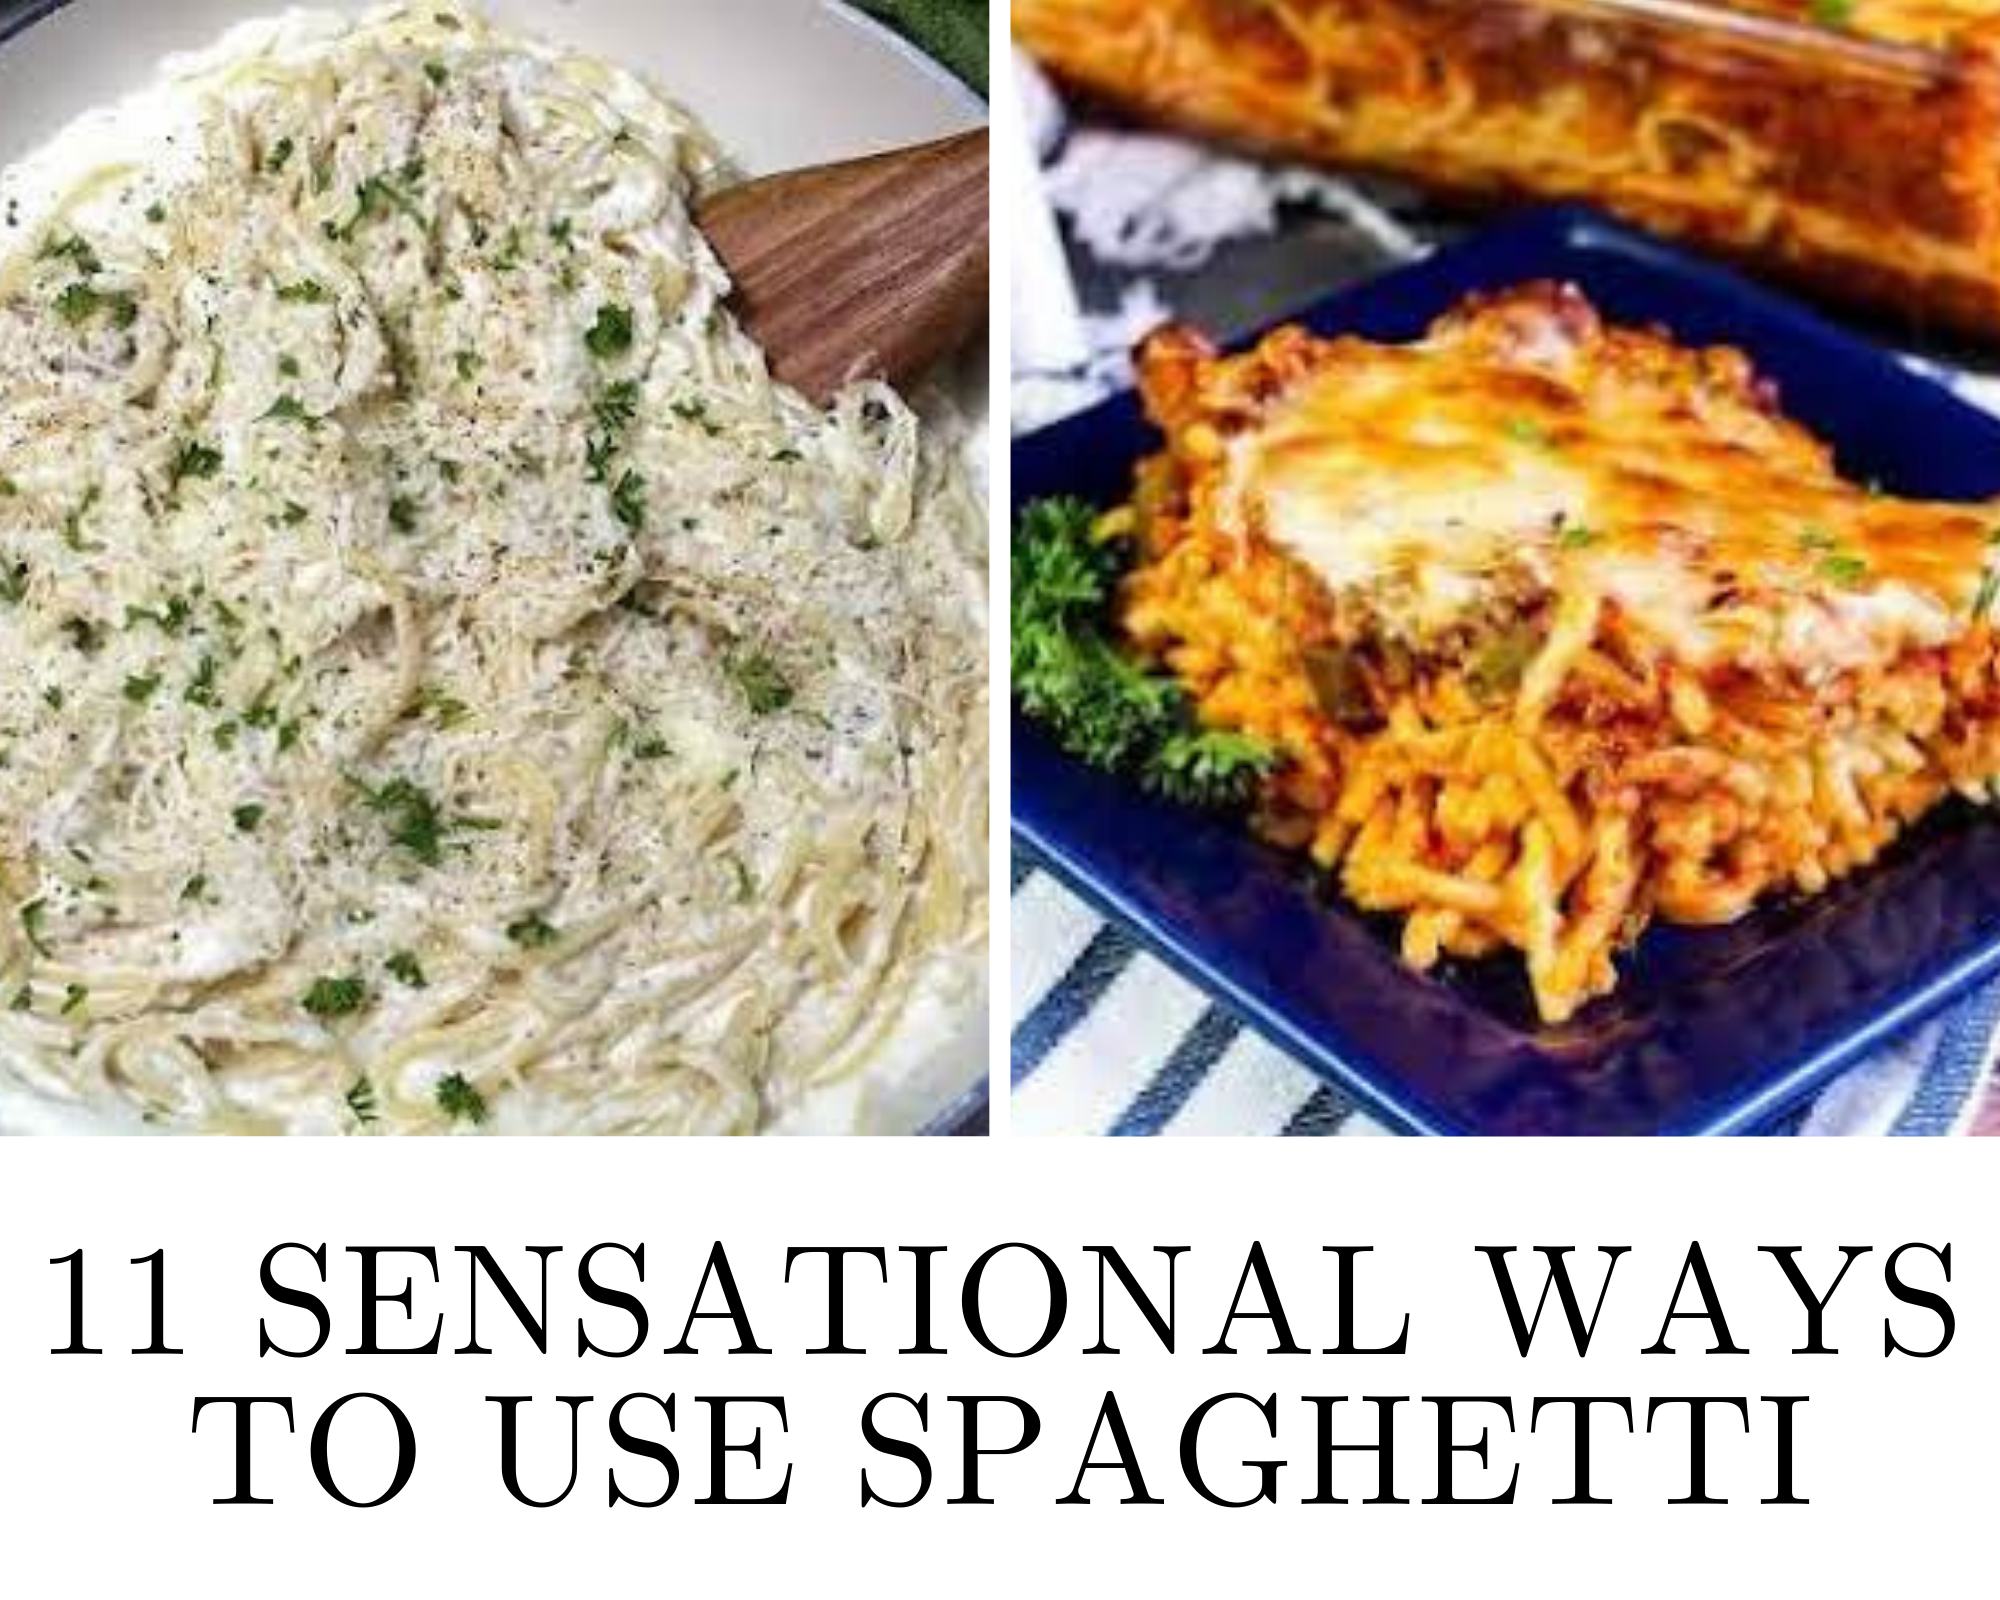 recipes that use spaghetti